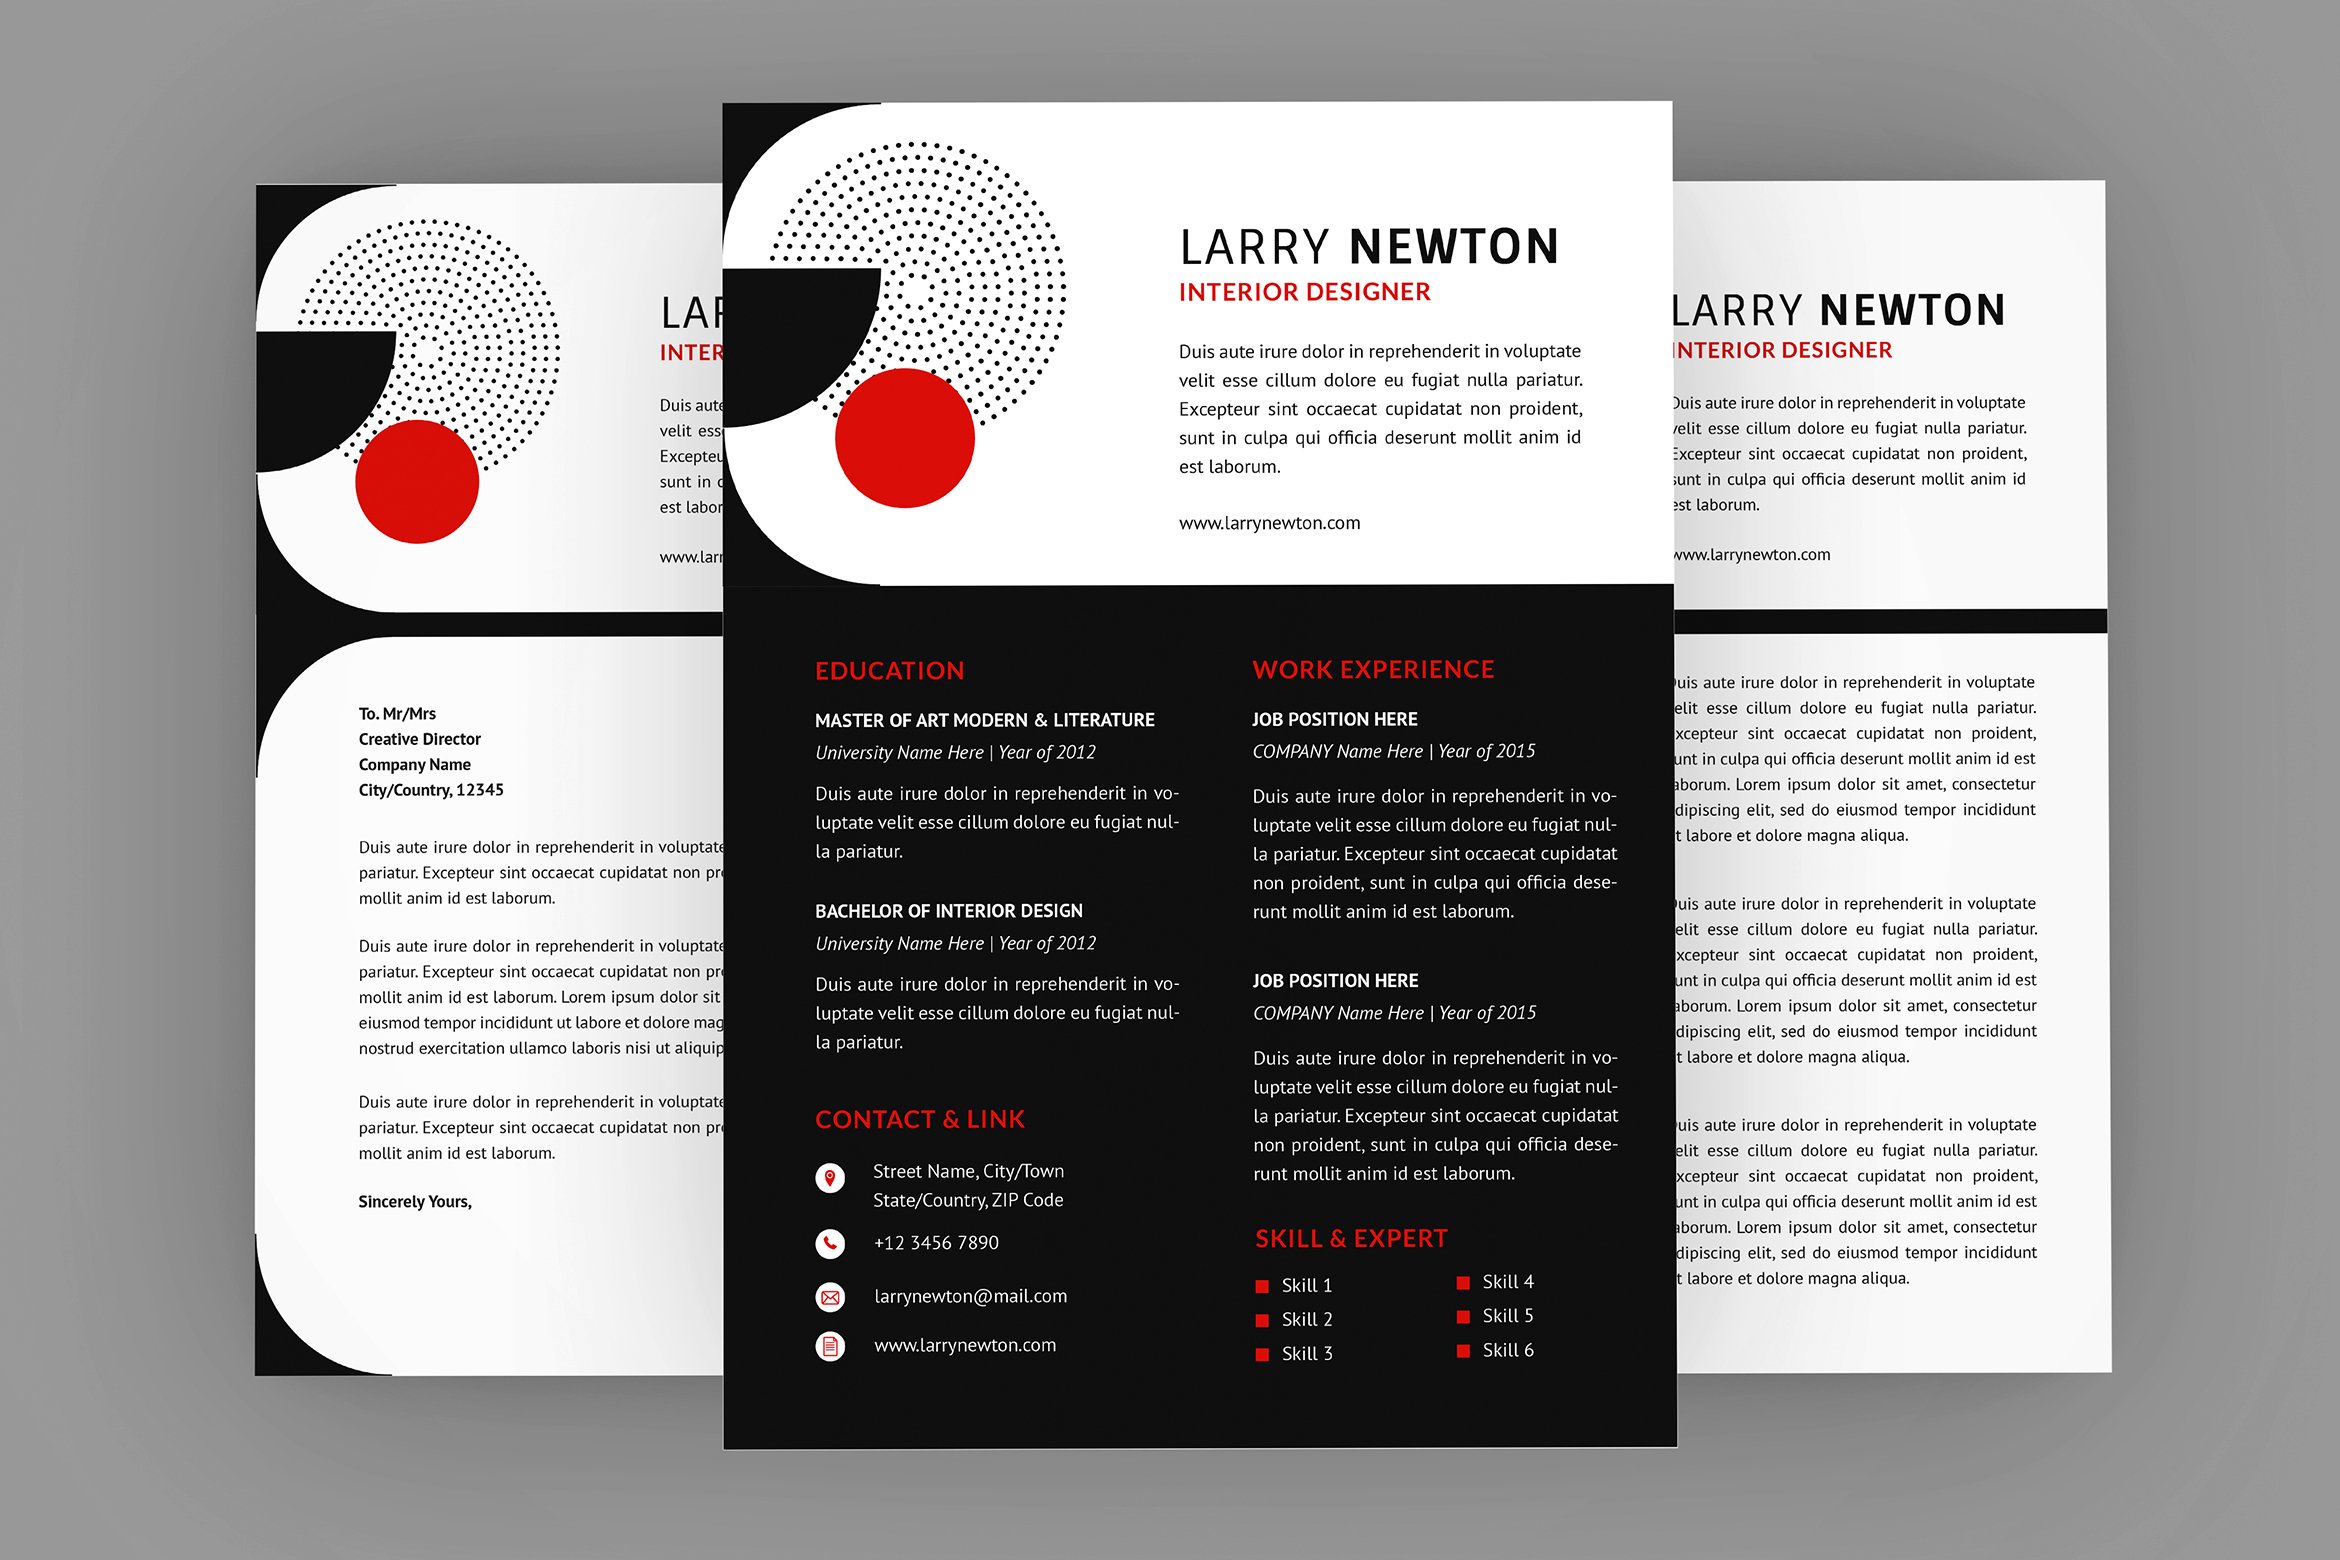 Larry Interior Resume Designer cover image.